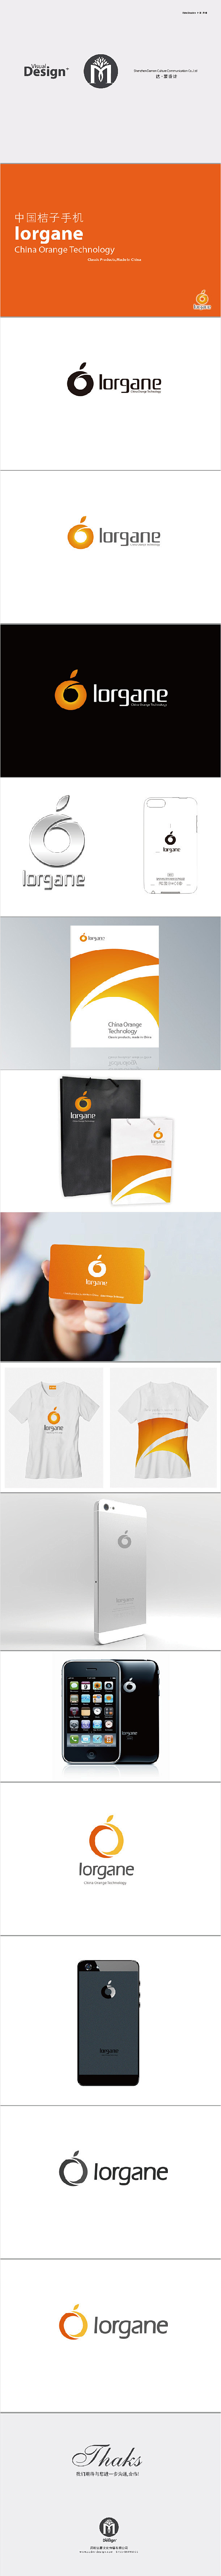 达蒙创意设计-中国桔子手机logo设计/...